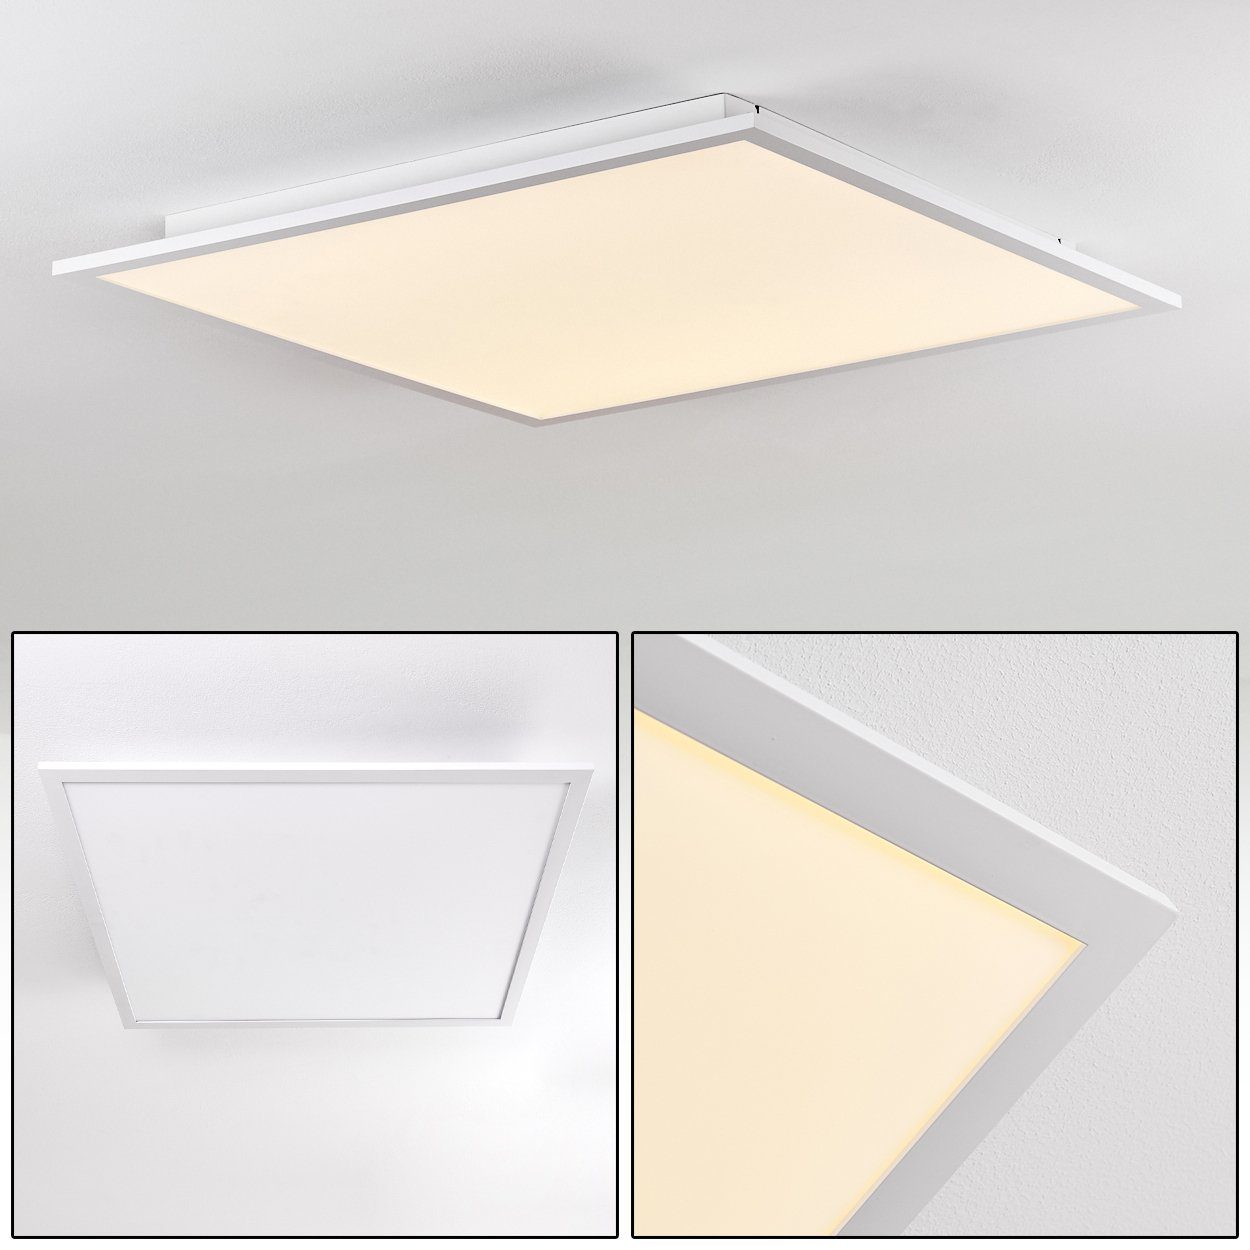 hofstein Panel »Vacil« LED Panel modernes Deckenpanel aus Aluminiumin Weiß, 3000 Kelvin, 40 Watt, 4800 Lumen, eckige Deckenlampe in flachem Design